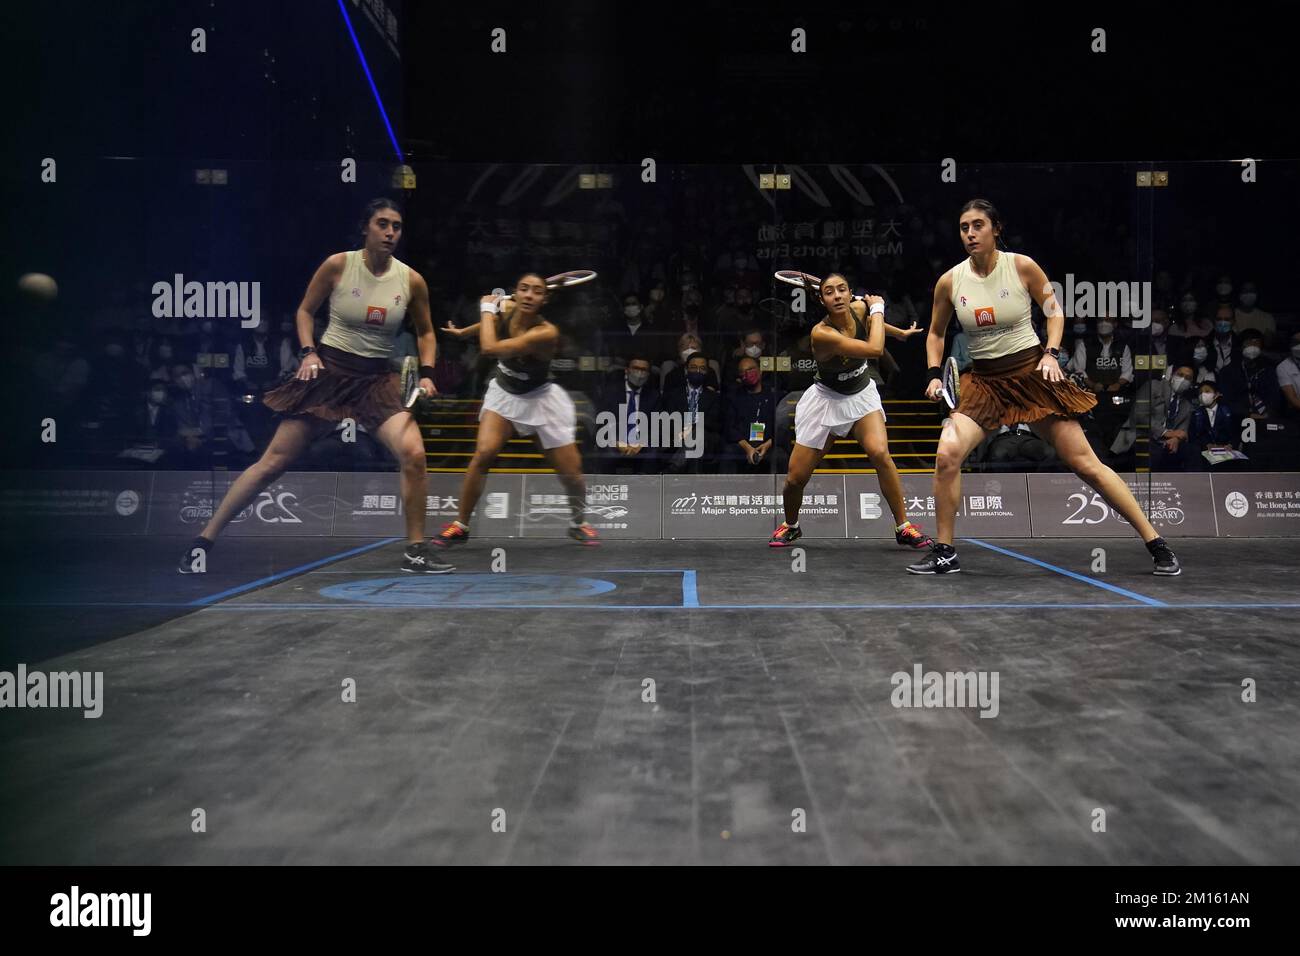 Hania El Hammamy (chemise verte) contre Nour El Sherbini lors du match final féminin de l'Open de squash de Hong Kong au Hong Kong Park Sports Center, 04DEC22. SCMP / Elson Li Banque D'Images